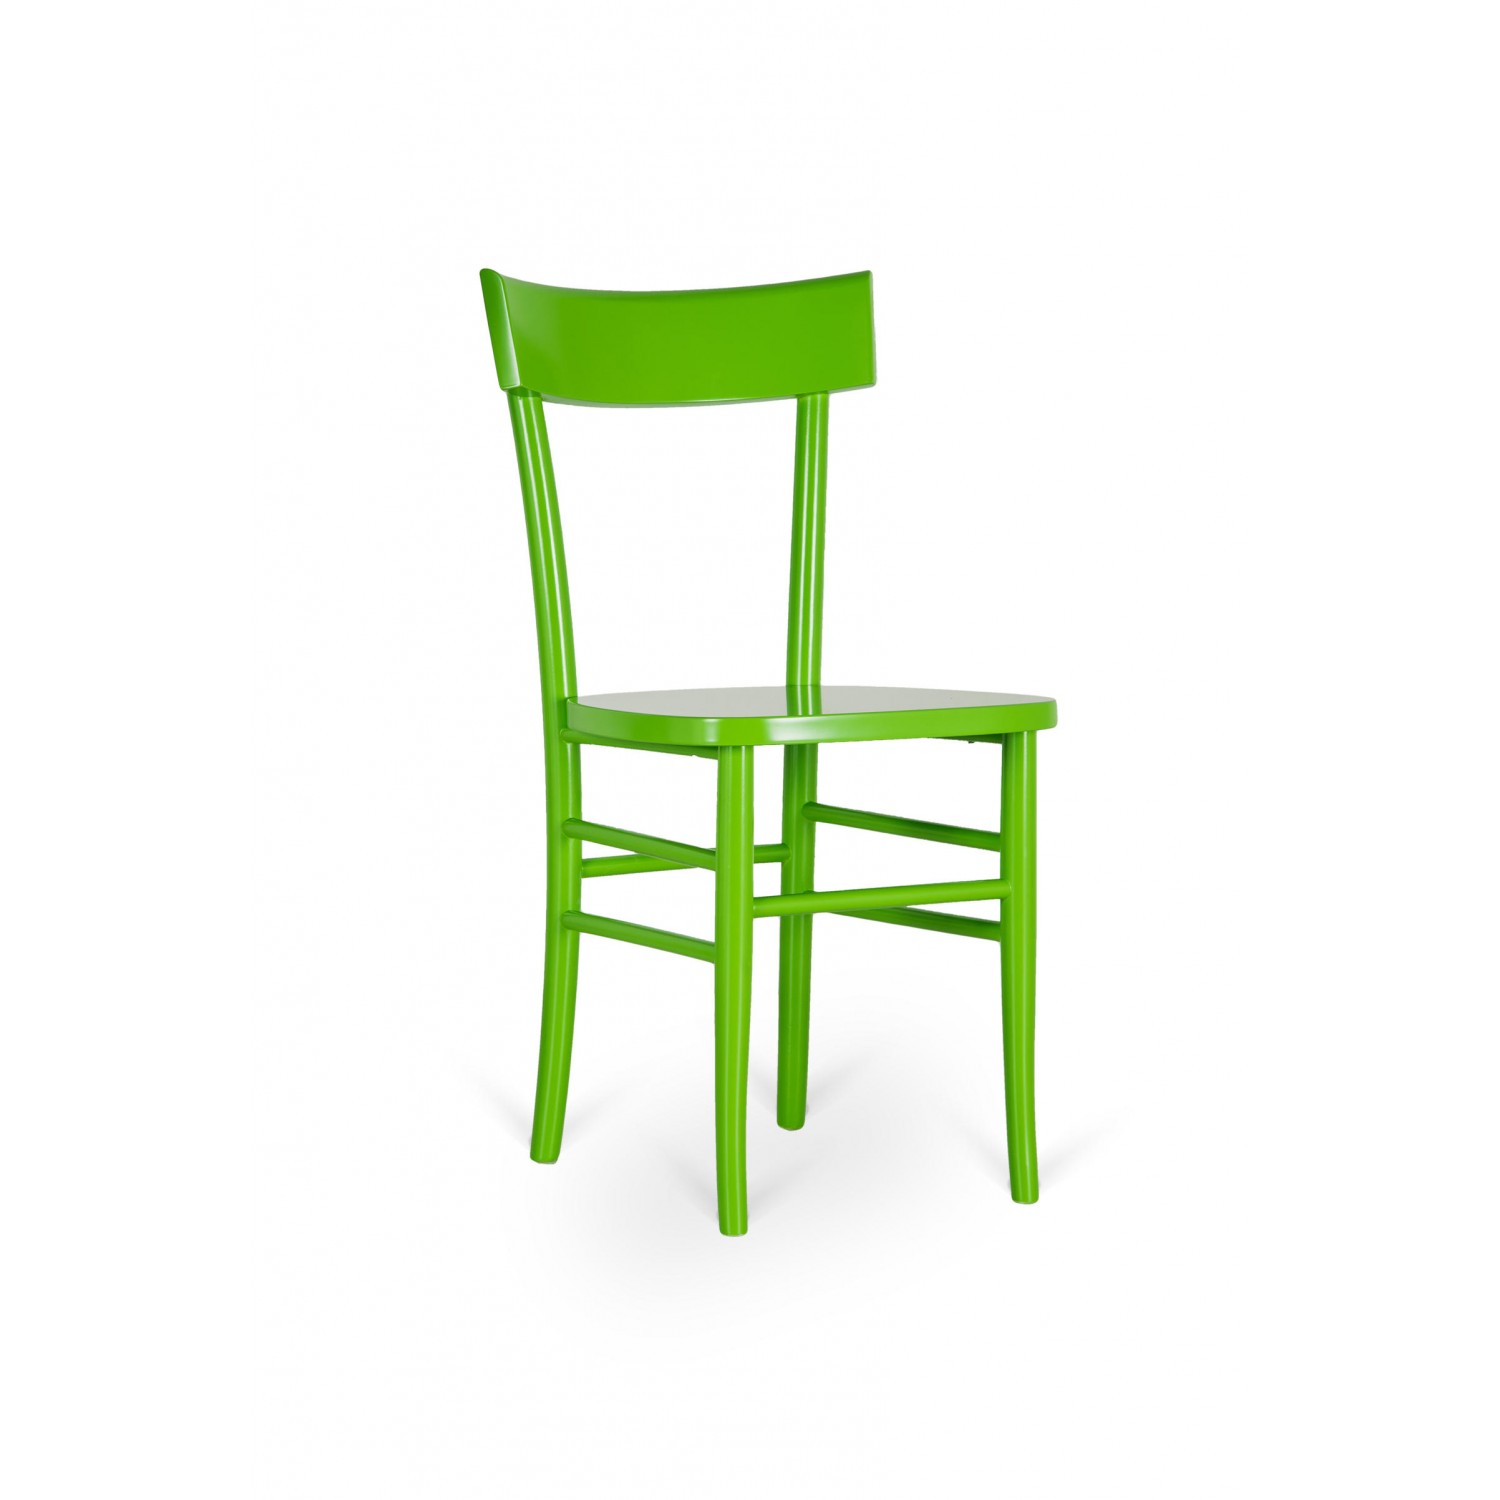 design twist sedia in legno laccato brera - set da 2